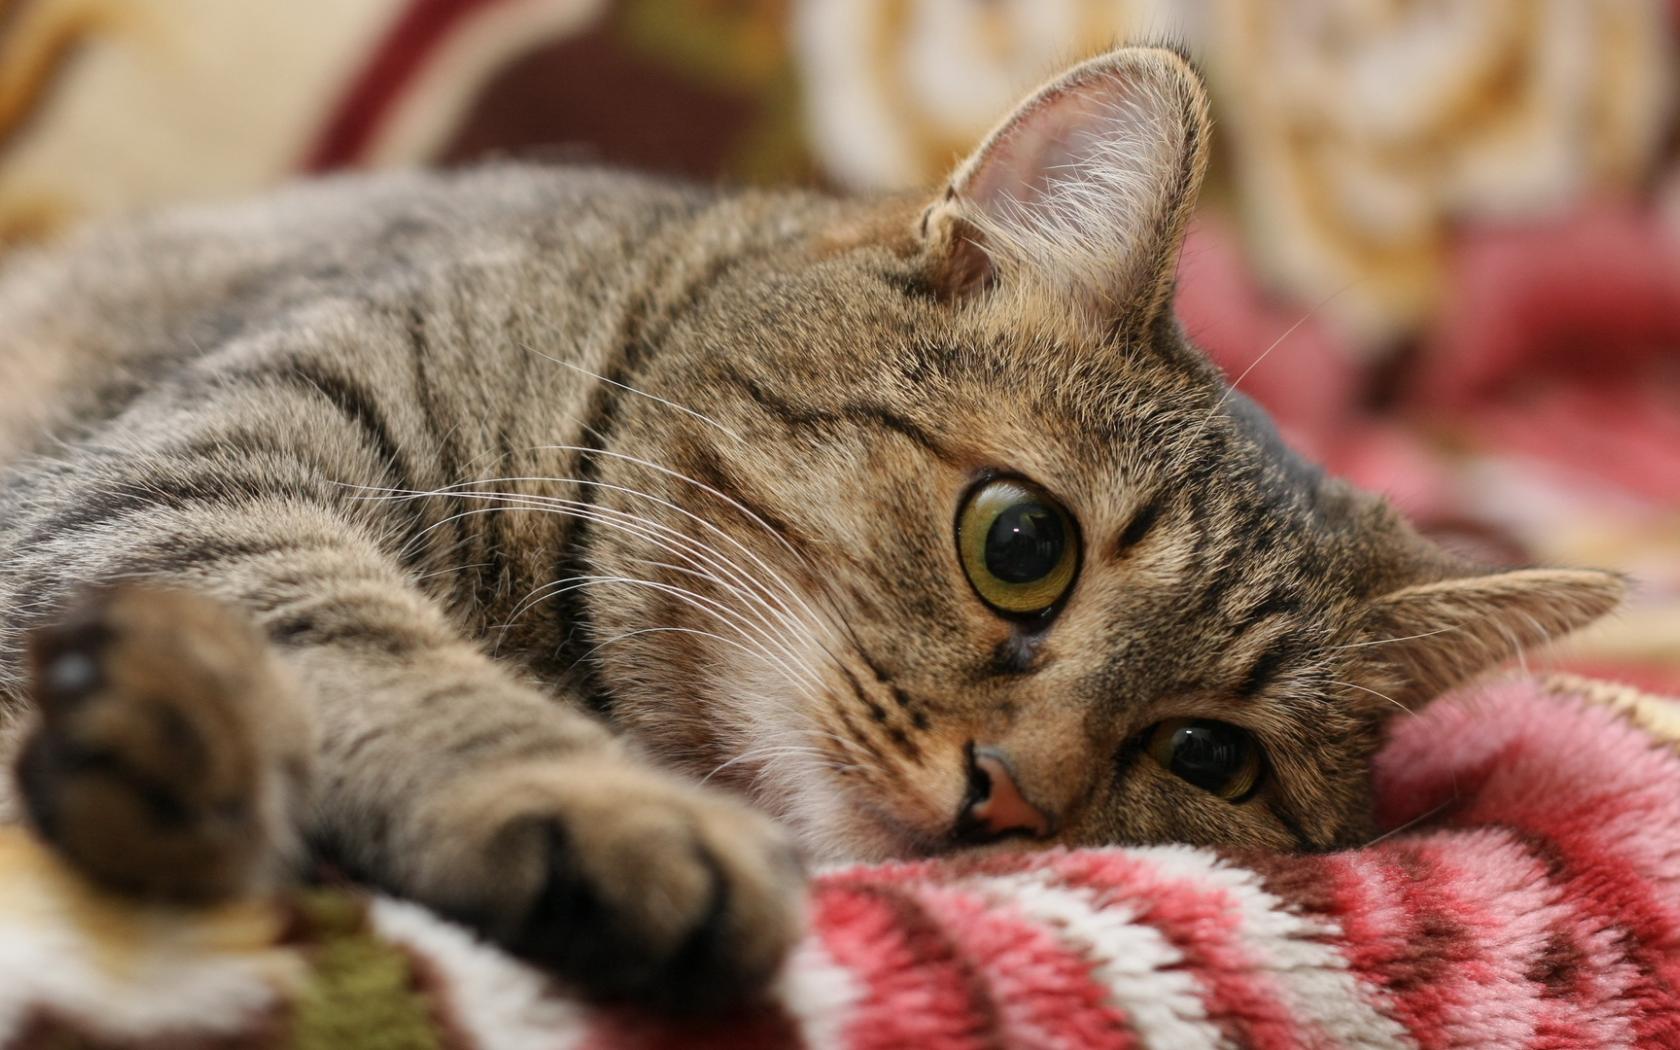 В лаборатории рассказали об опасности криптококкоза у кошек